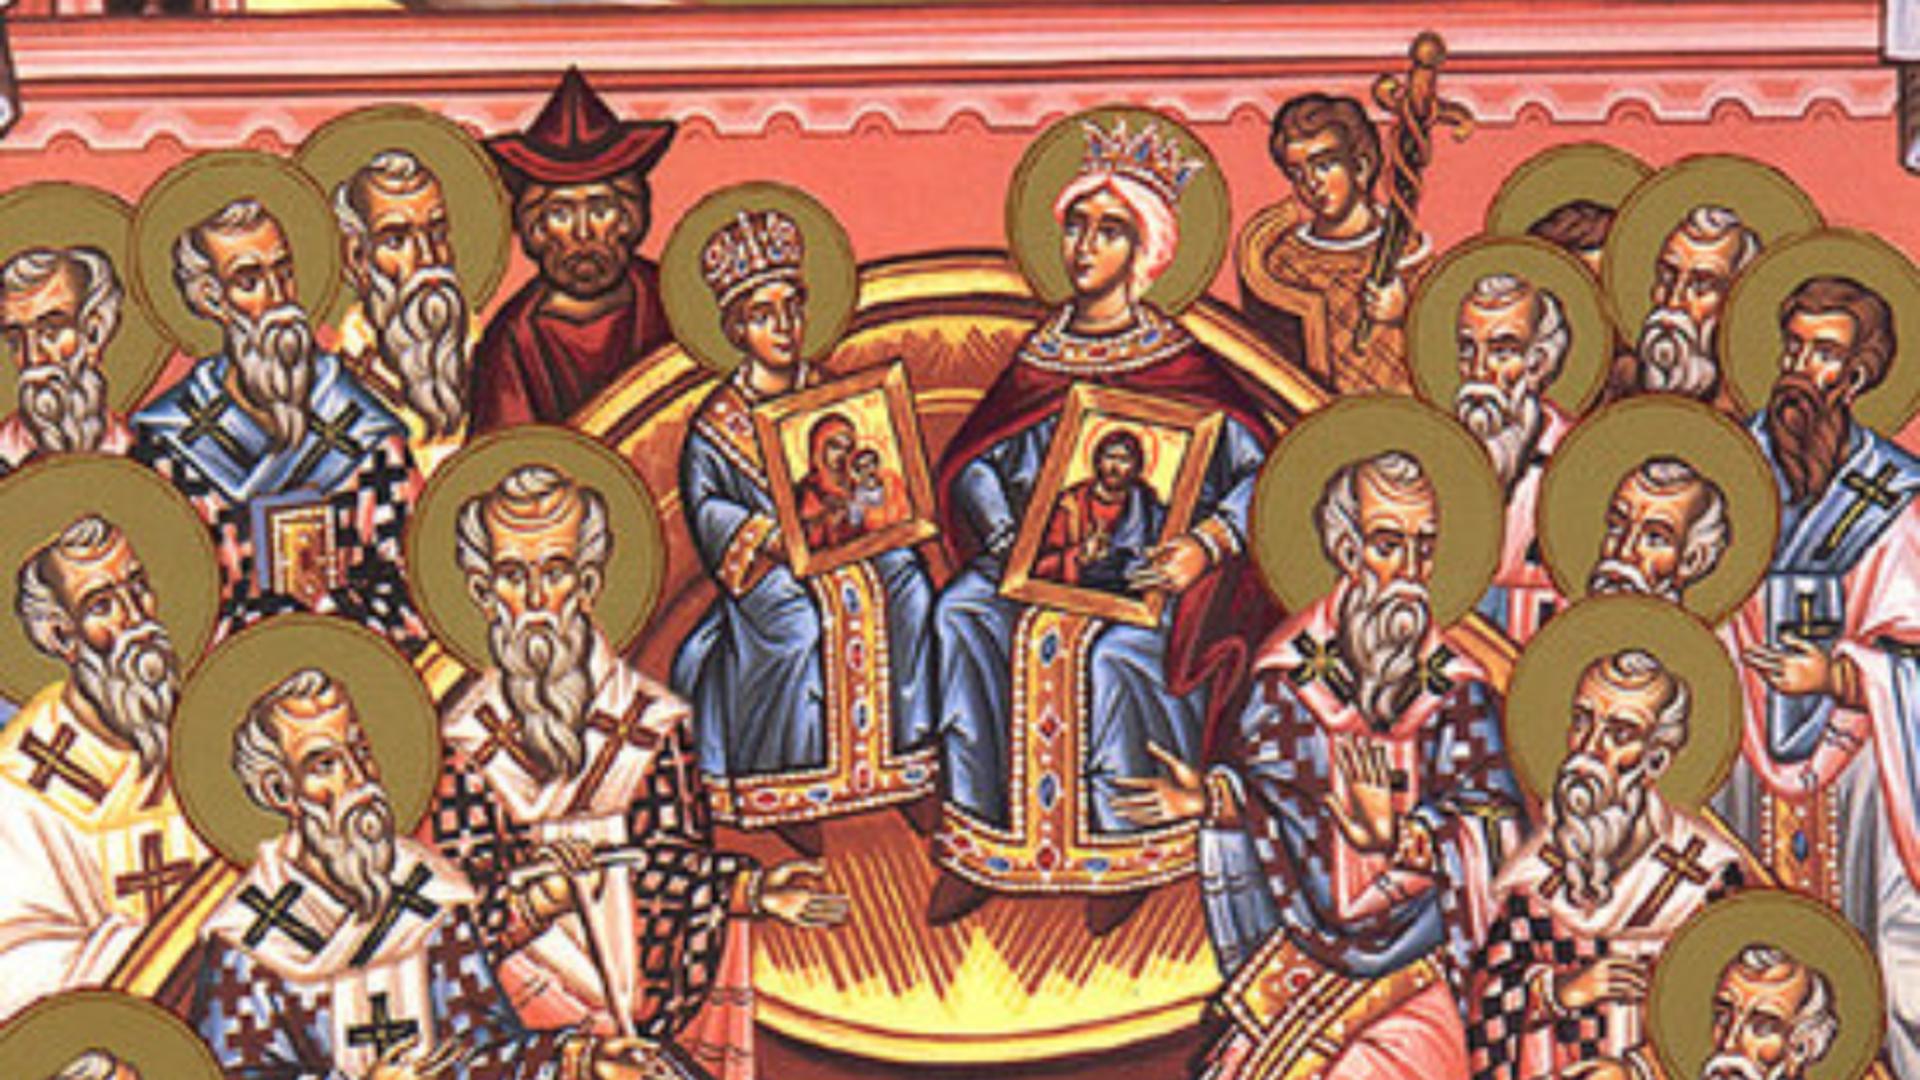 Sărbătoare 15 octombrie. Mari sfinți pomeniți în calendarul ortodox. Zi cu deosebită însemnătate